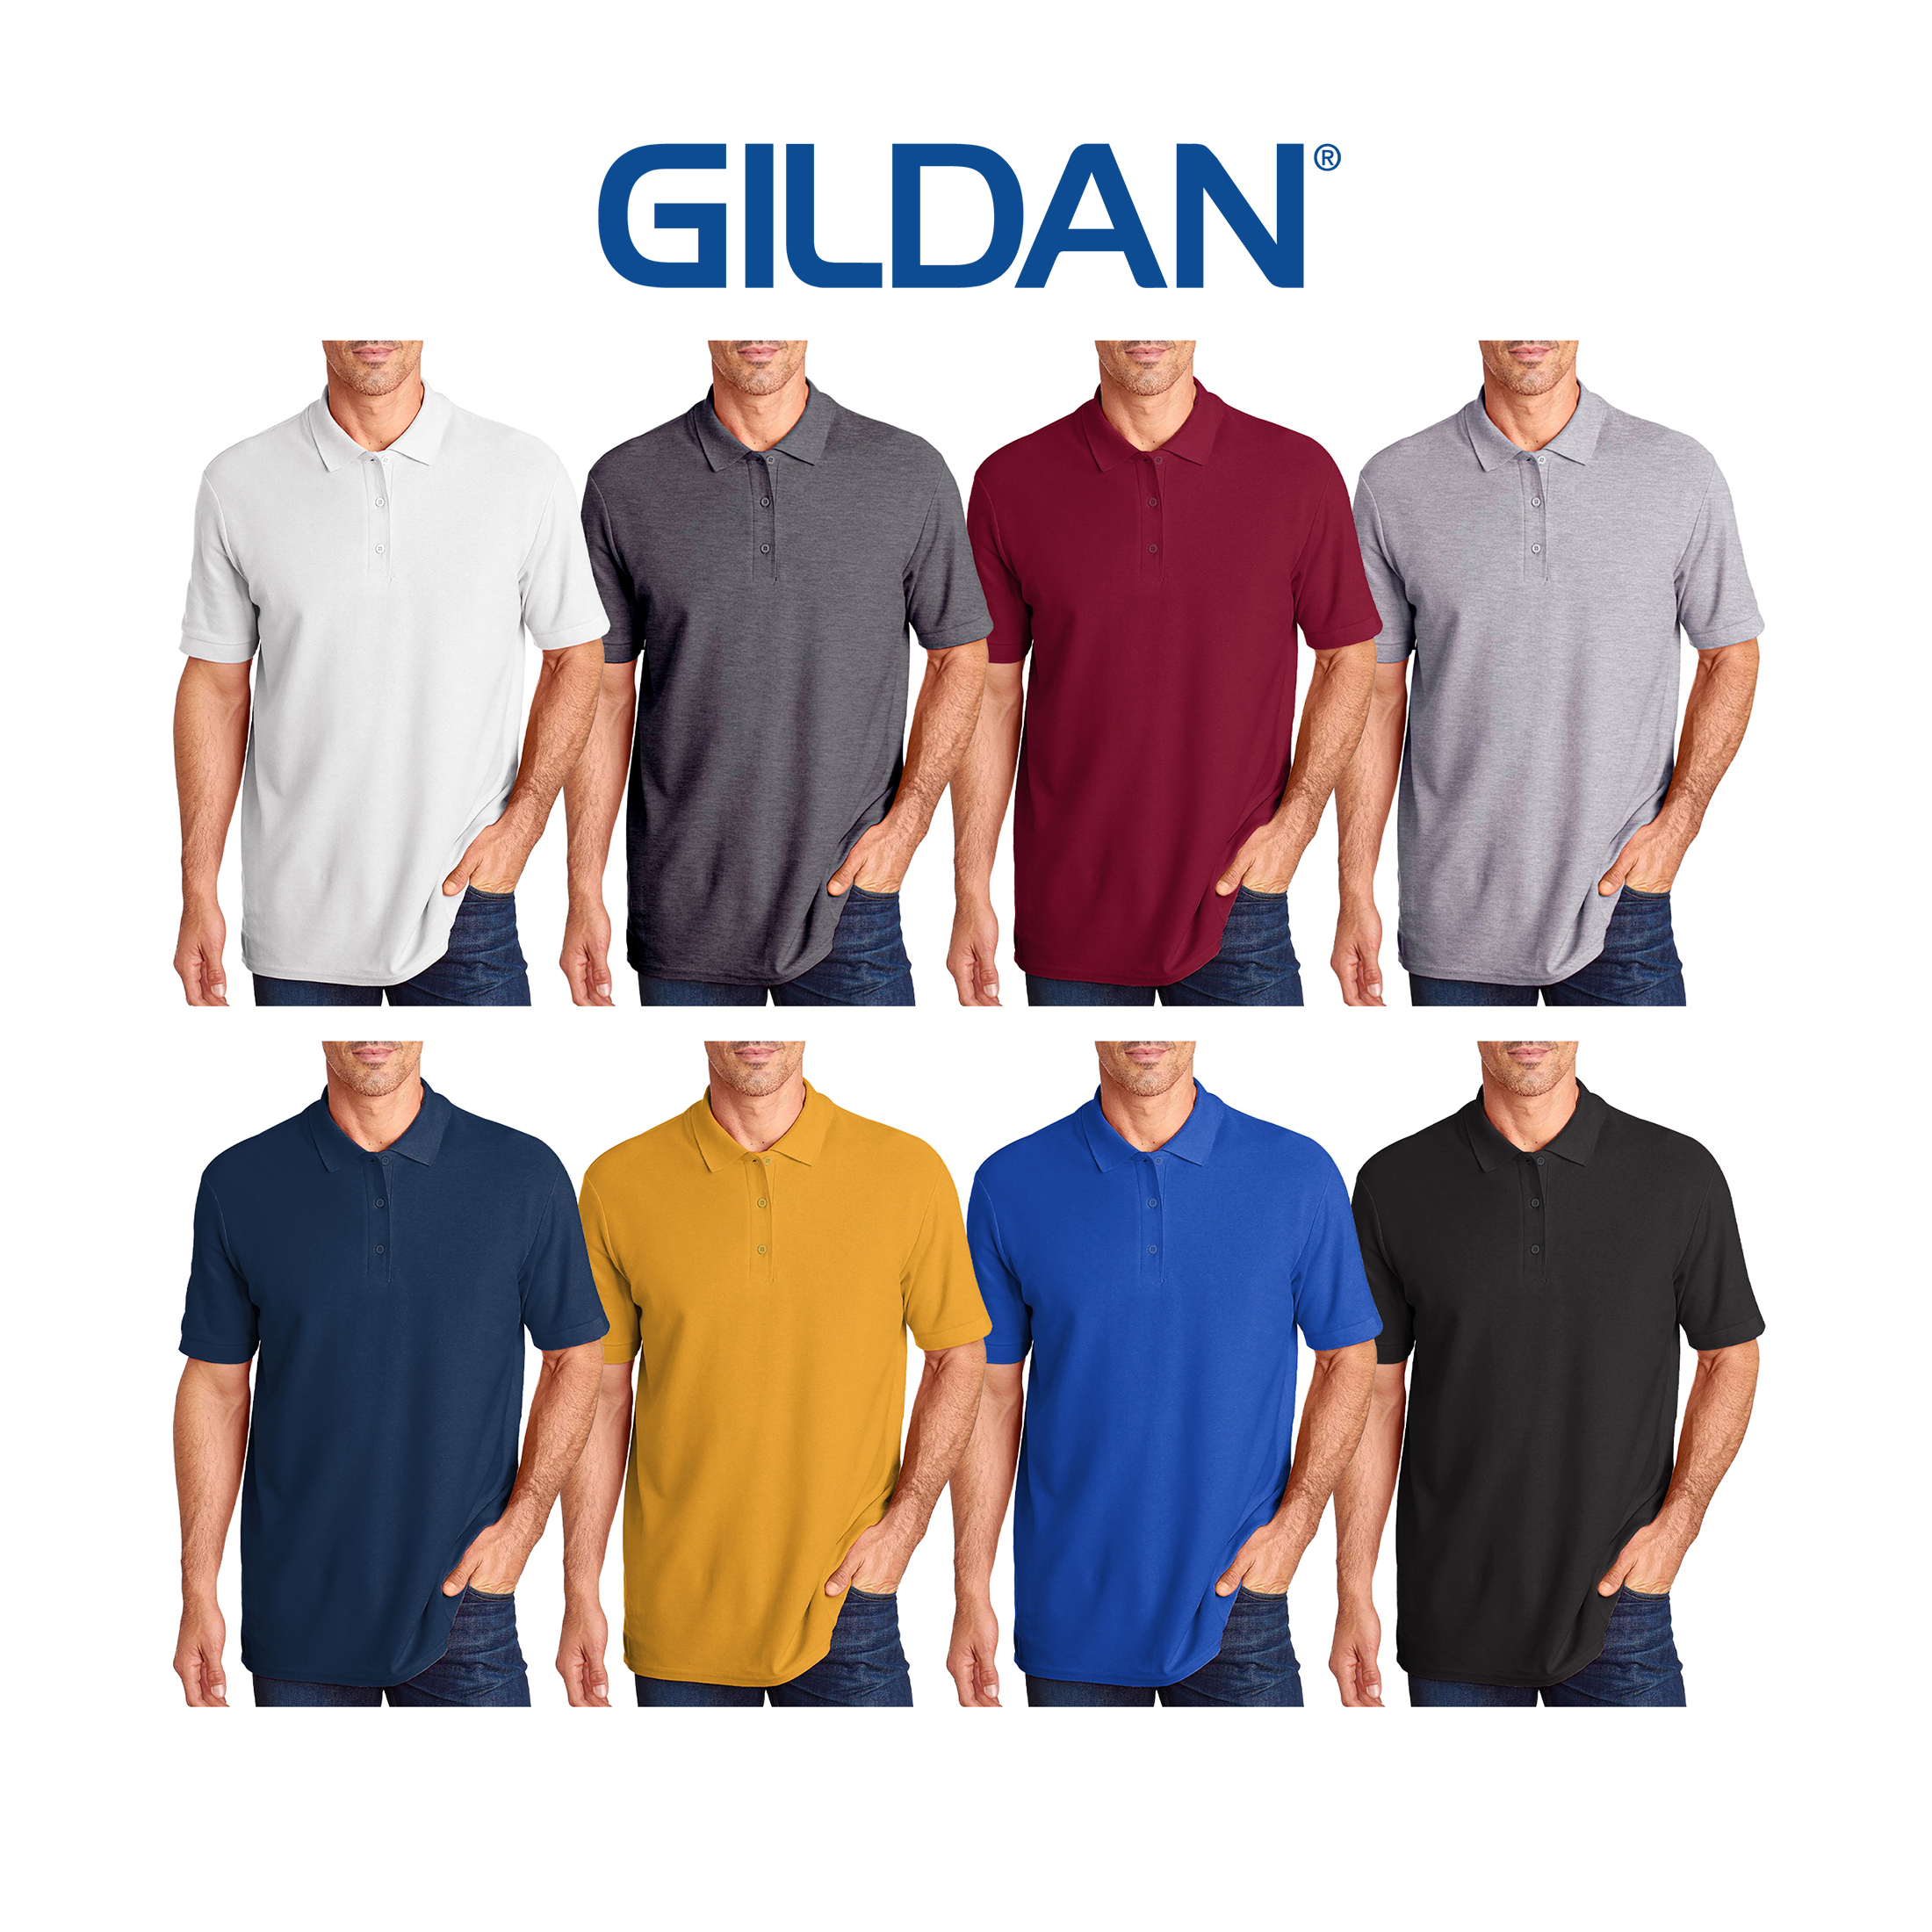 4-Pack Men's Gildan Premium Cotton Pique Polos - M